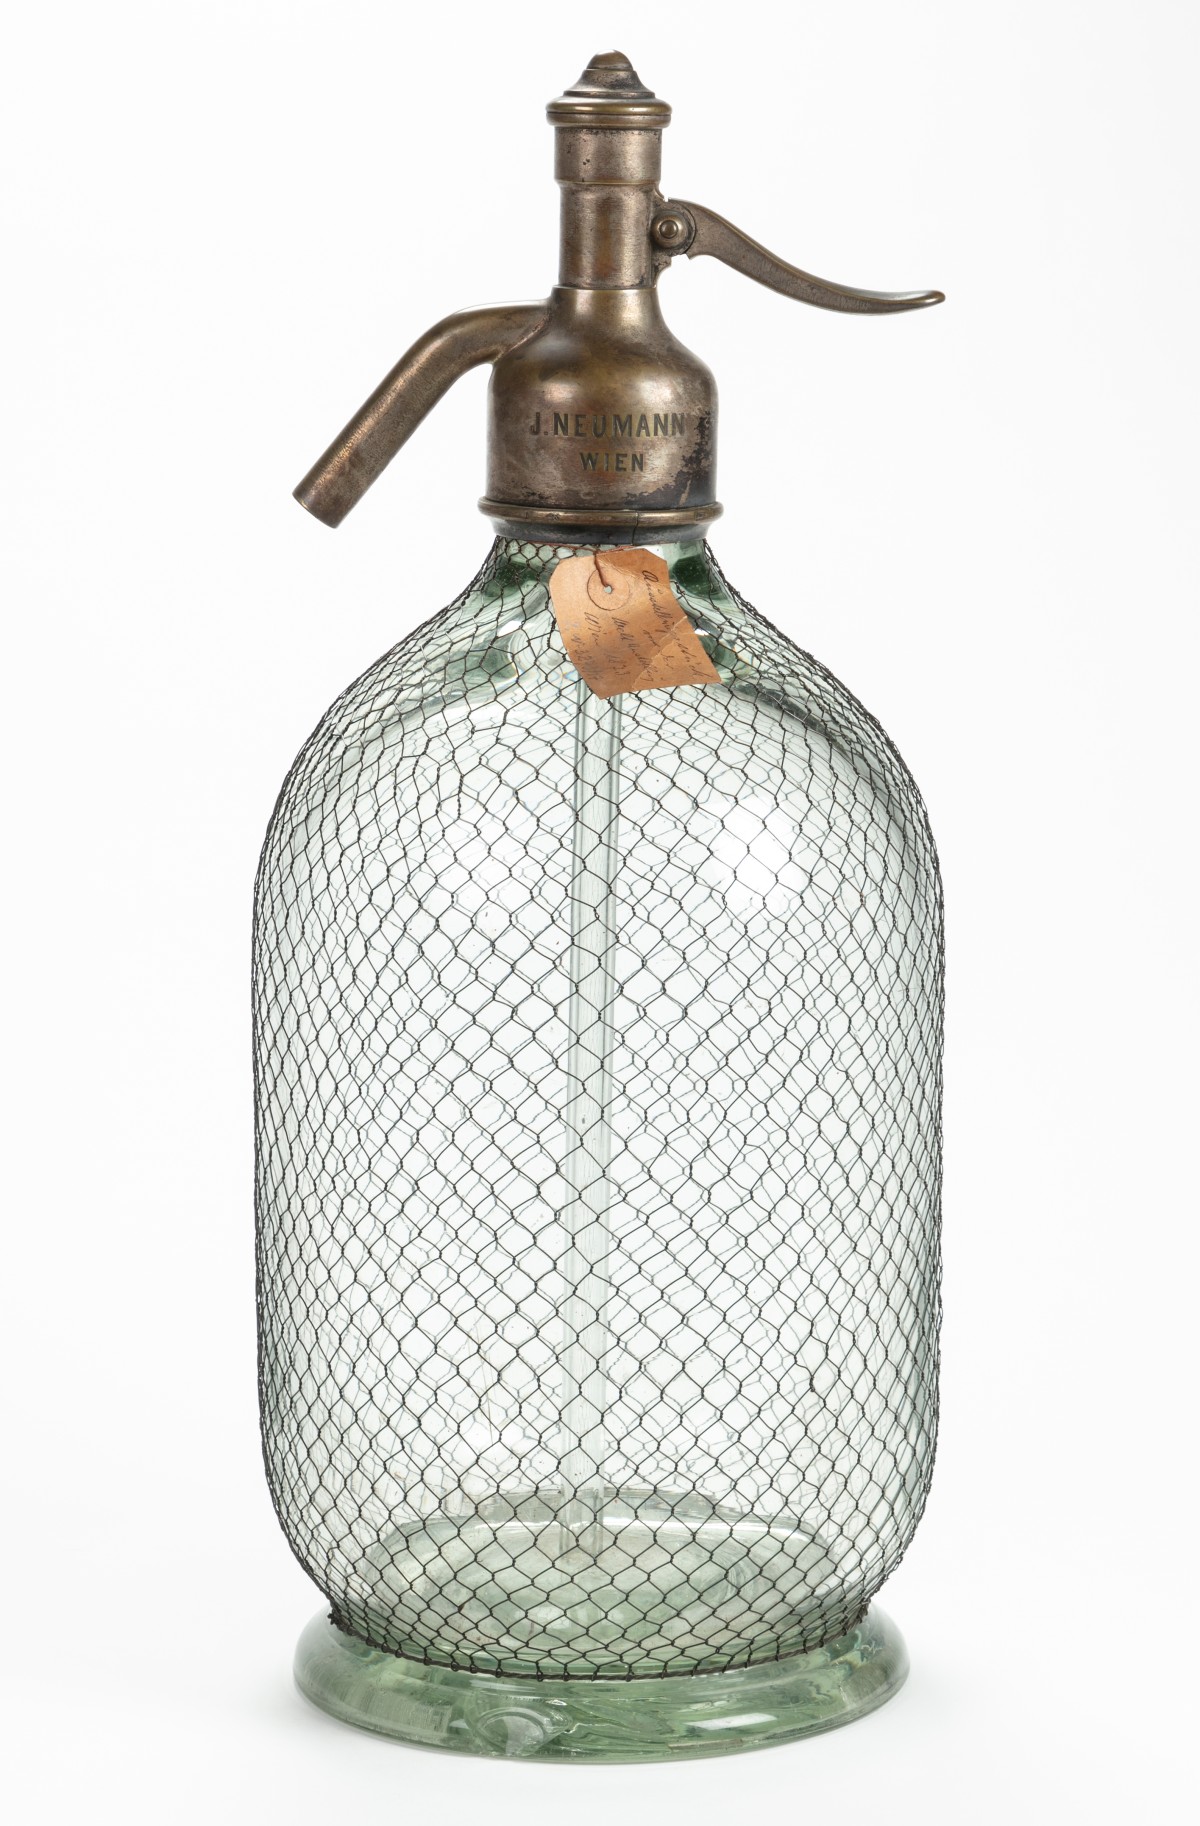 Siphonflasche, die auf der Wiener Weltausstellung 1873 genutzt wurde, Wiener Sodawasserfabriken